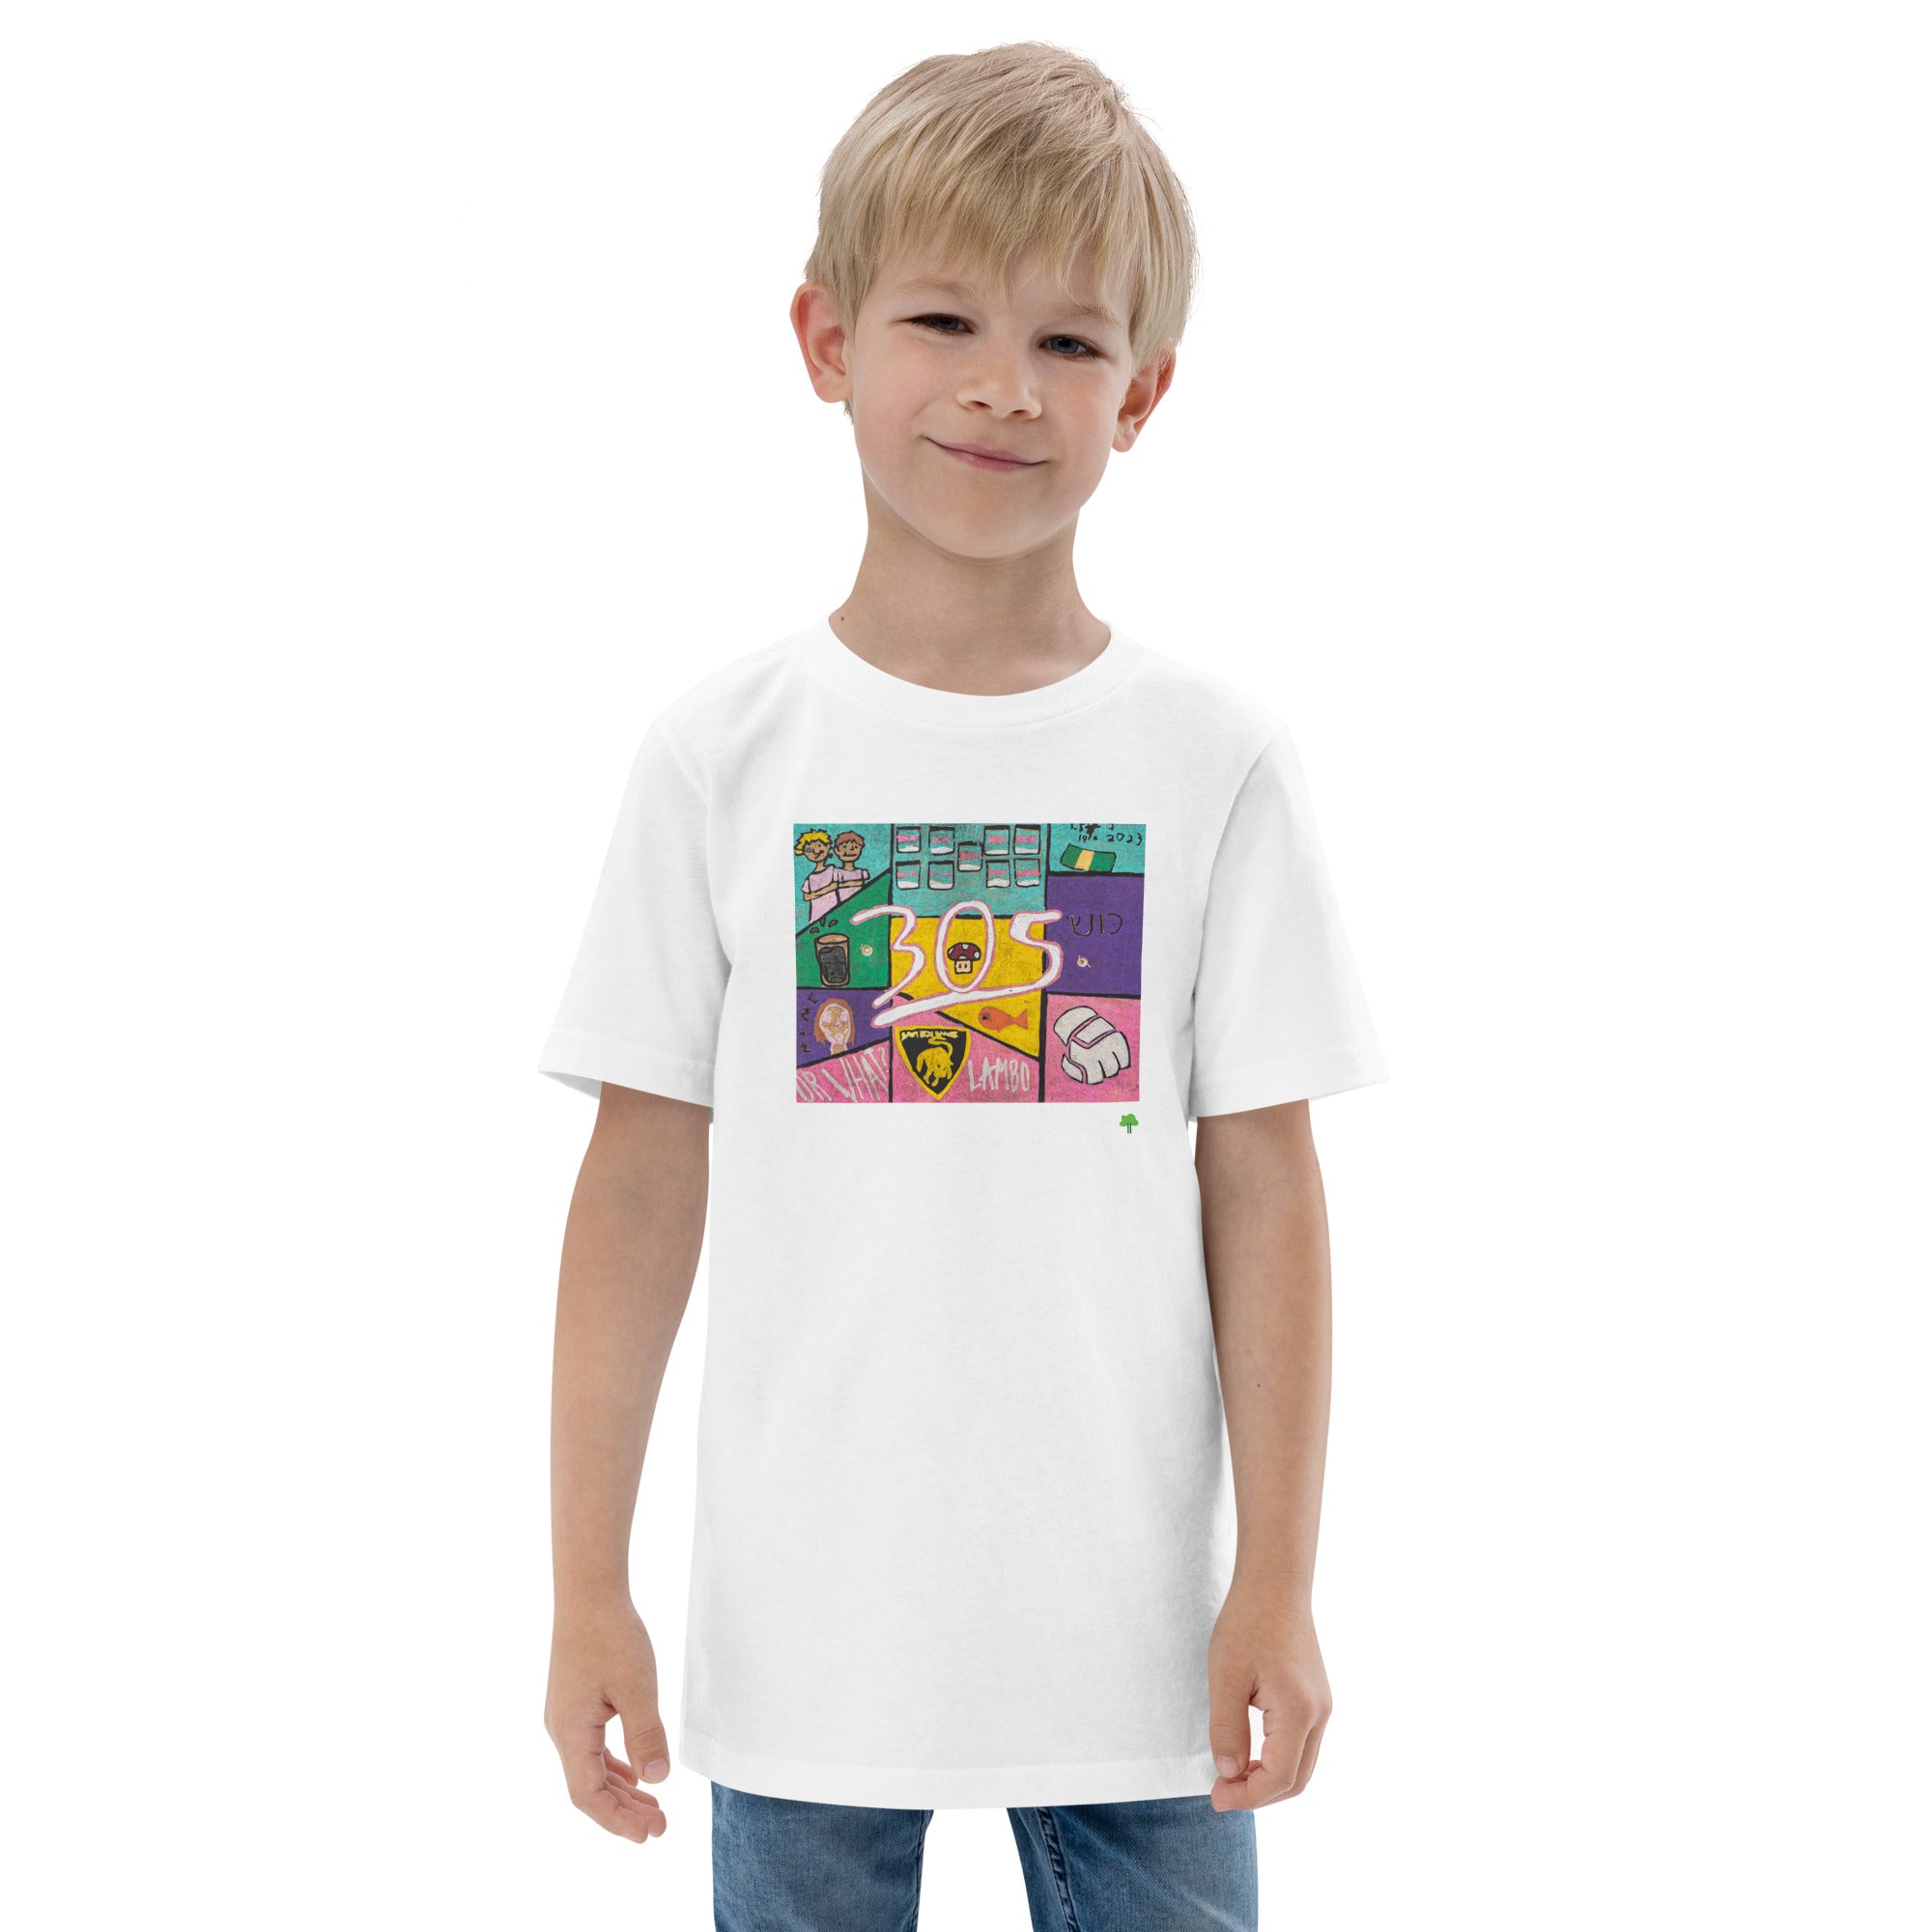 I Temp - Lago - K7 | Youth jersey t-shirt